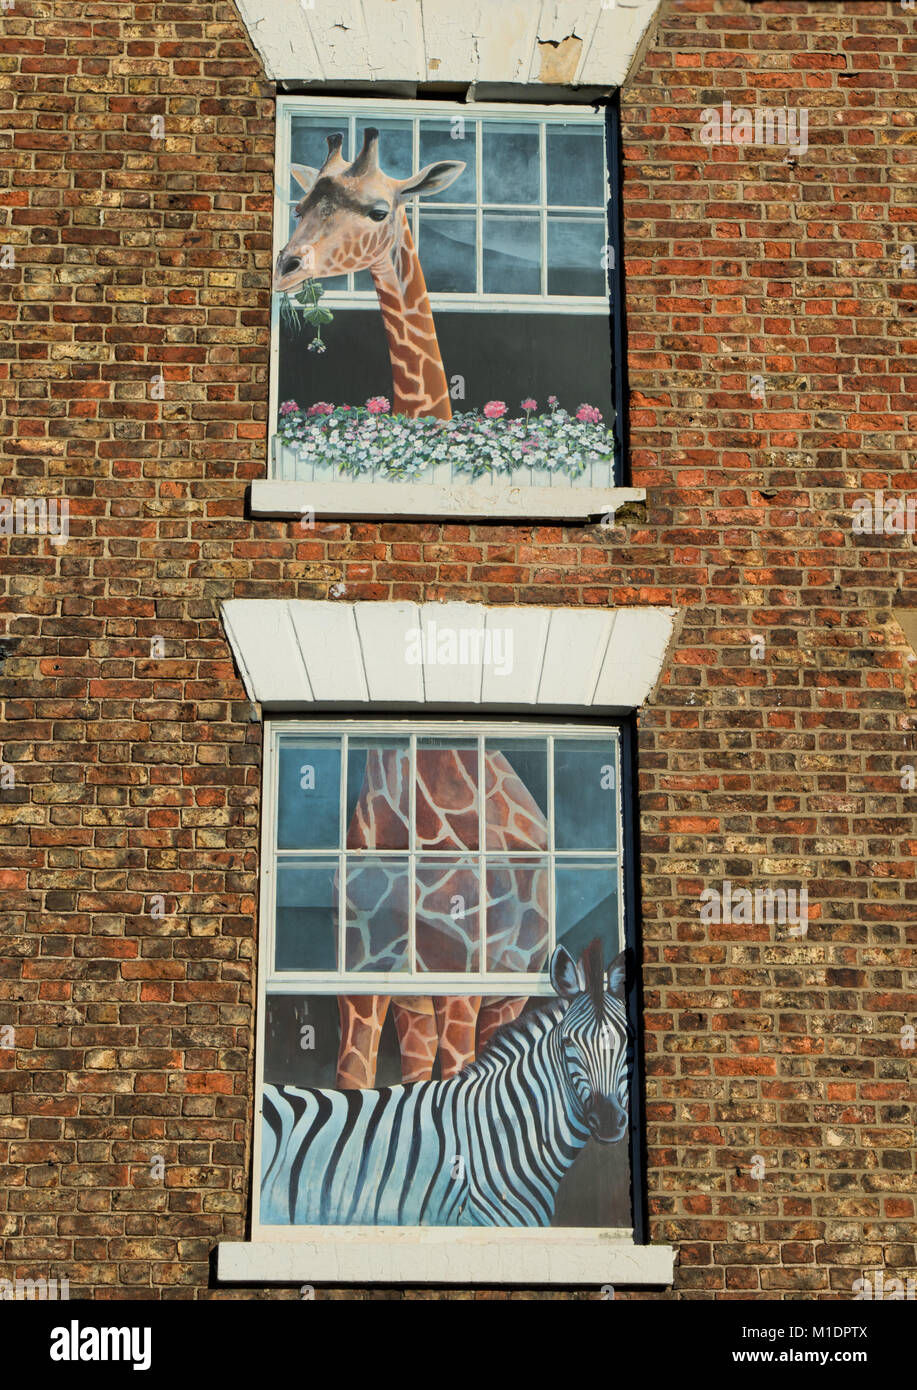 Des peintures murales en trompe-l'œil sur un bâtiment résidentiel aux zèbres et girafes amants décorant les fenêtres, Knaresborough, Angleterre, Royaume-Uni. Banque D'Images